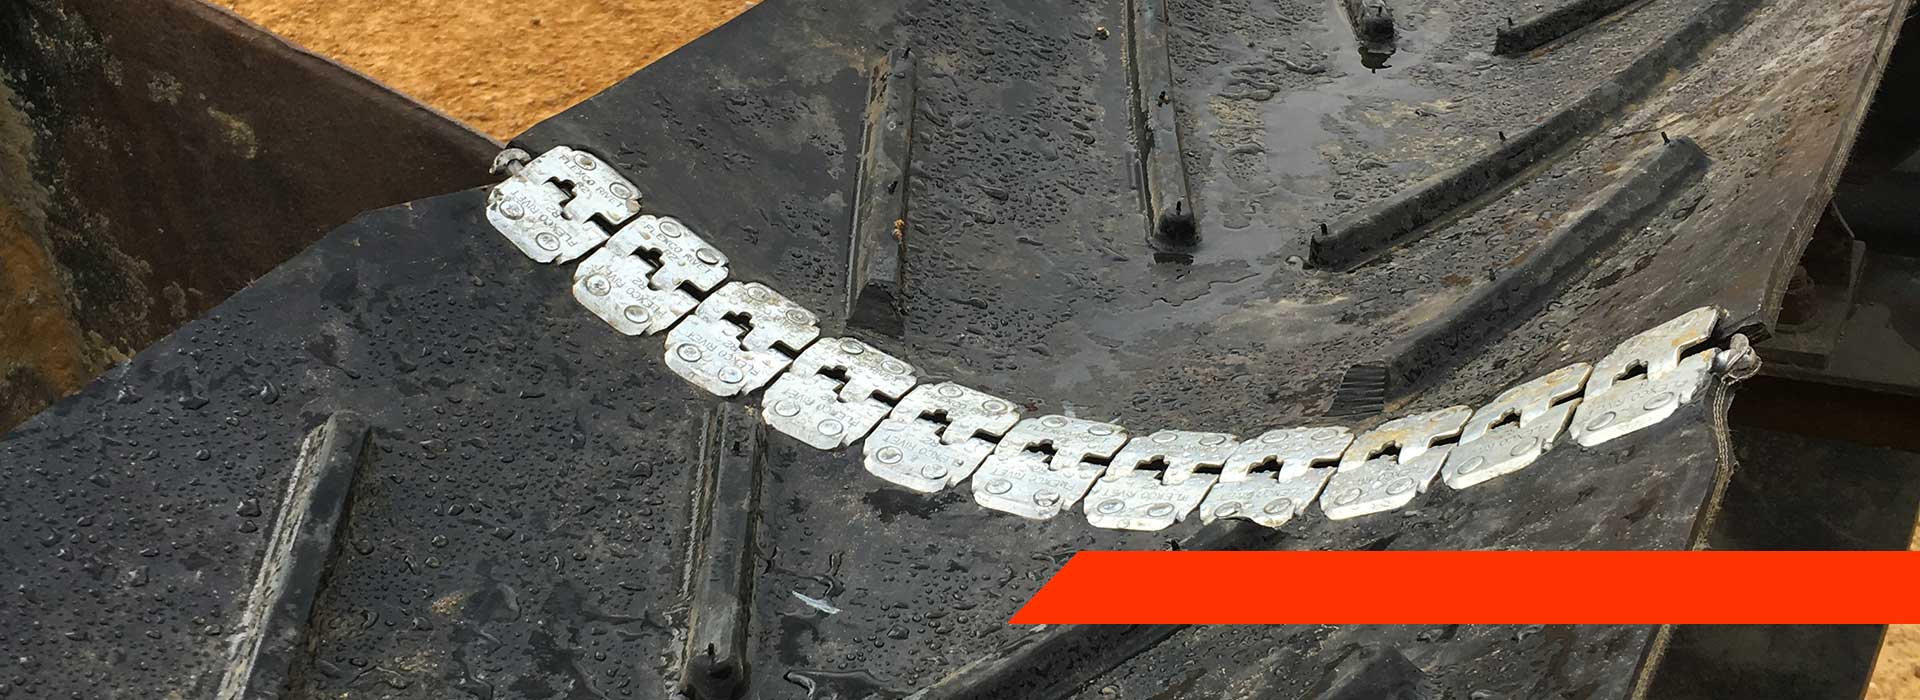 rubber conveyor belt splice